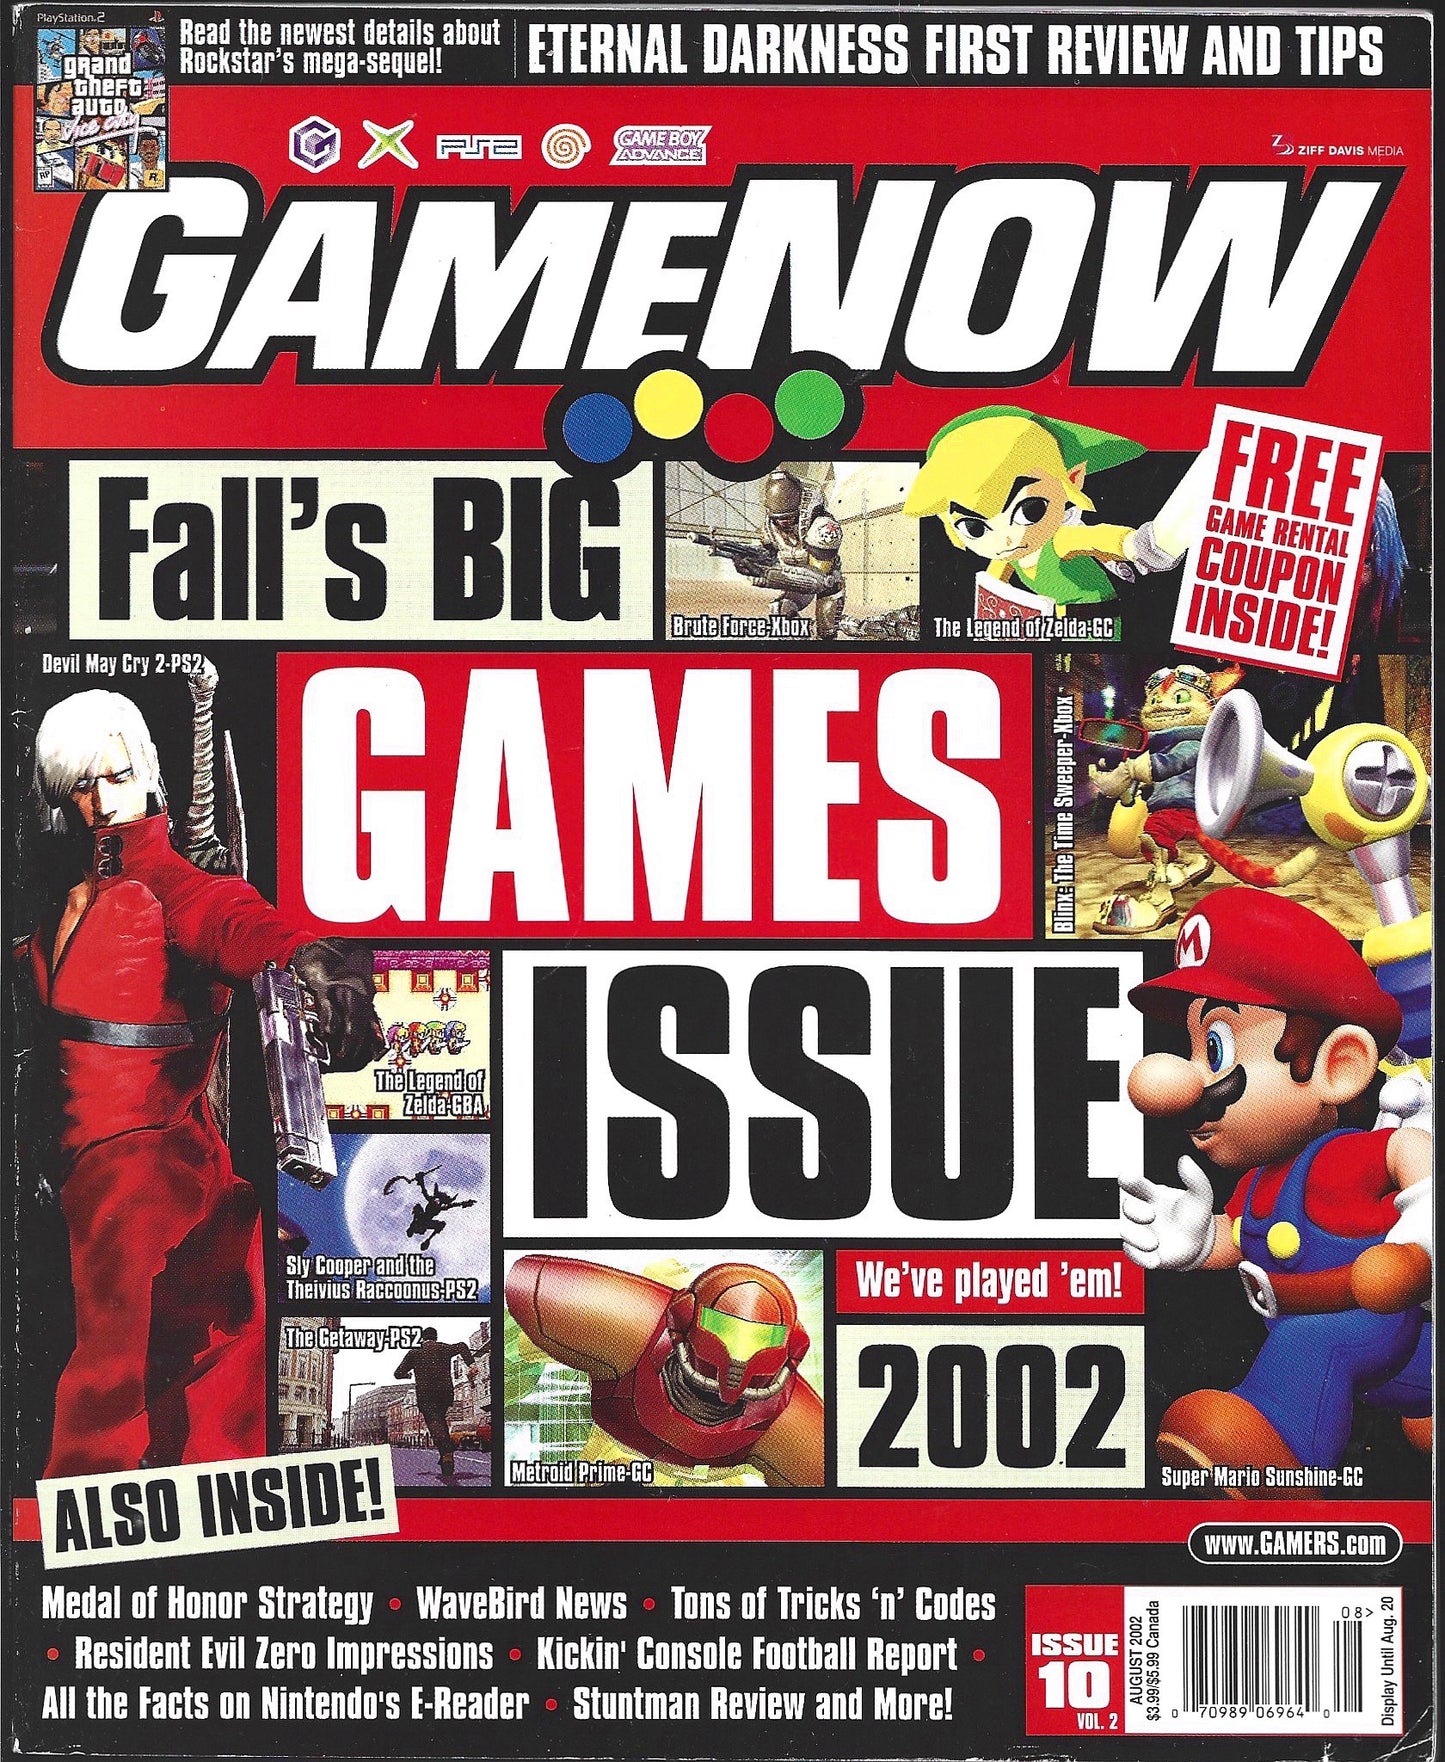 GameNOW Volume 2 Issue 10 (August 2002)